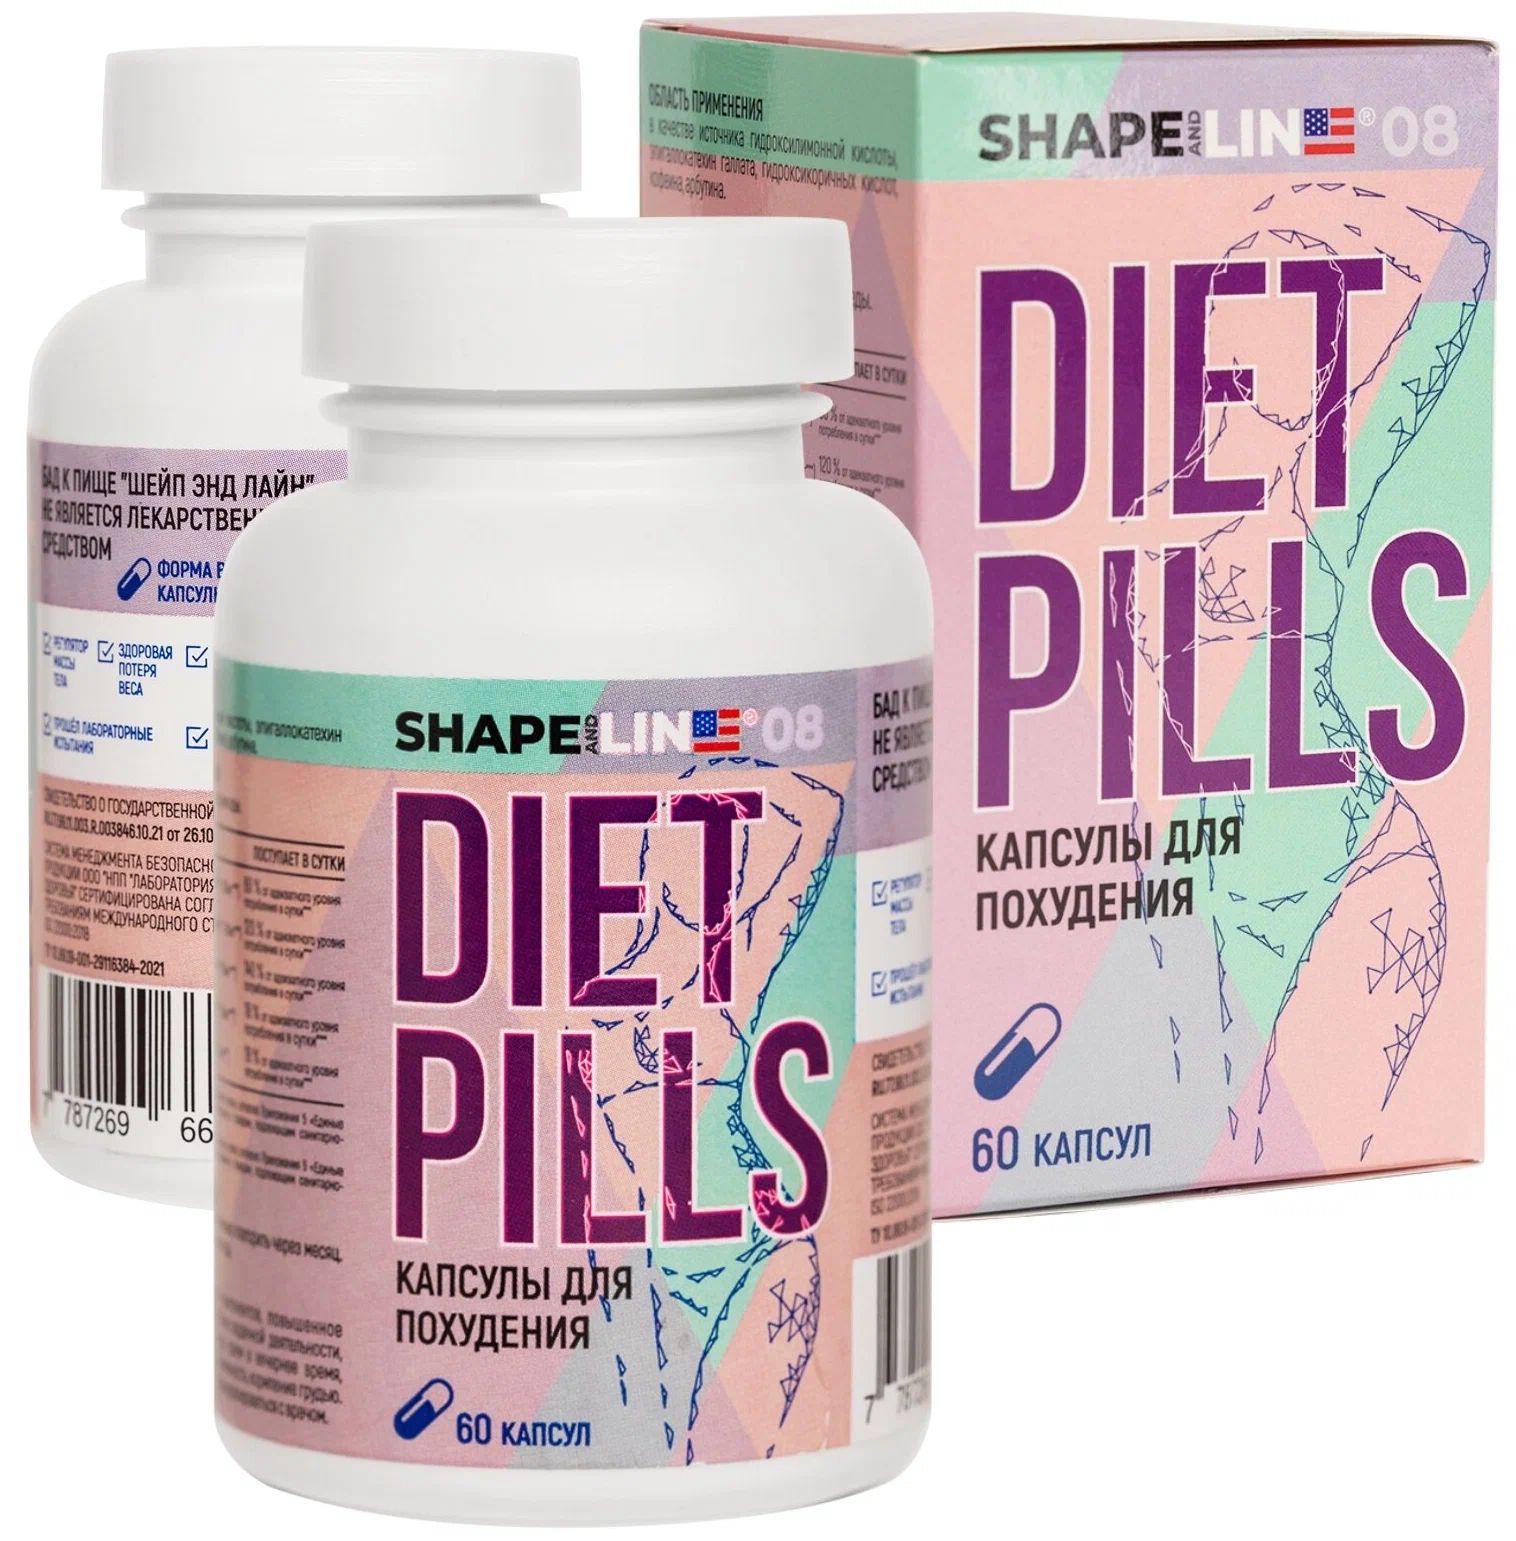 Shape and Line Таблетки для похудения и снижения веса Diet Pills 60шт.